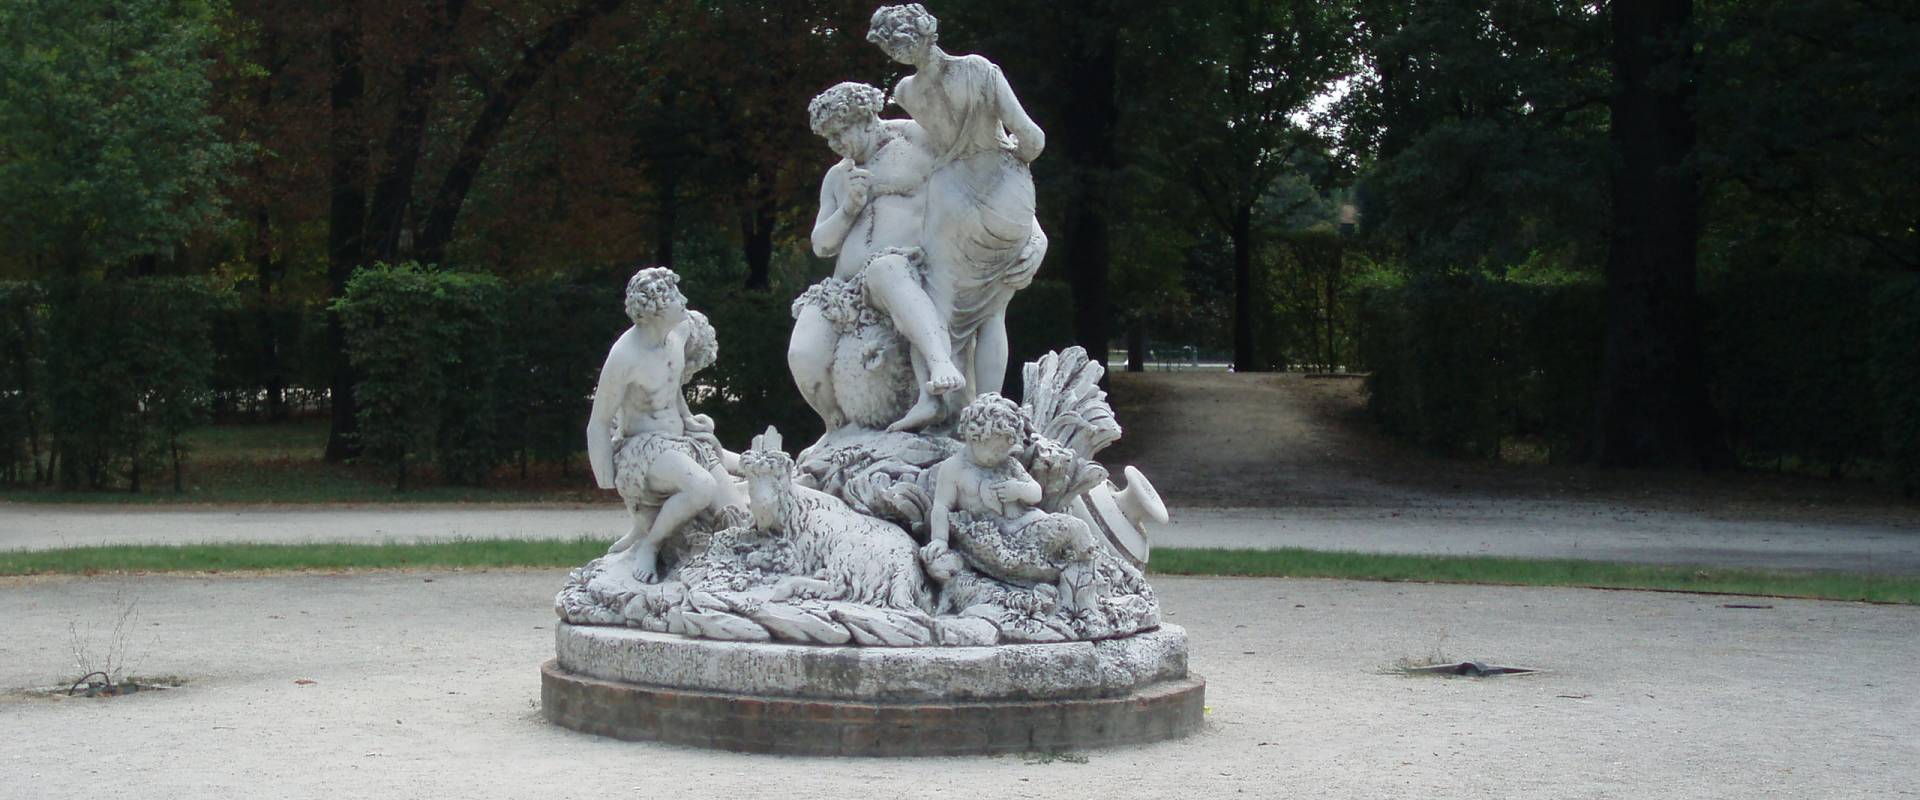 Statua parco ducale di Parma photo by Marcogiulio